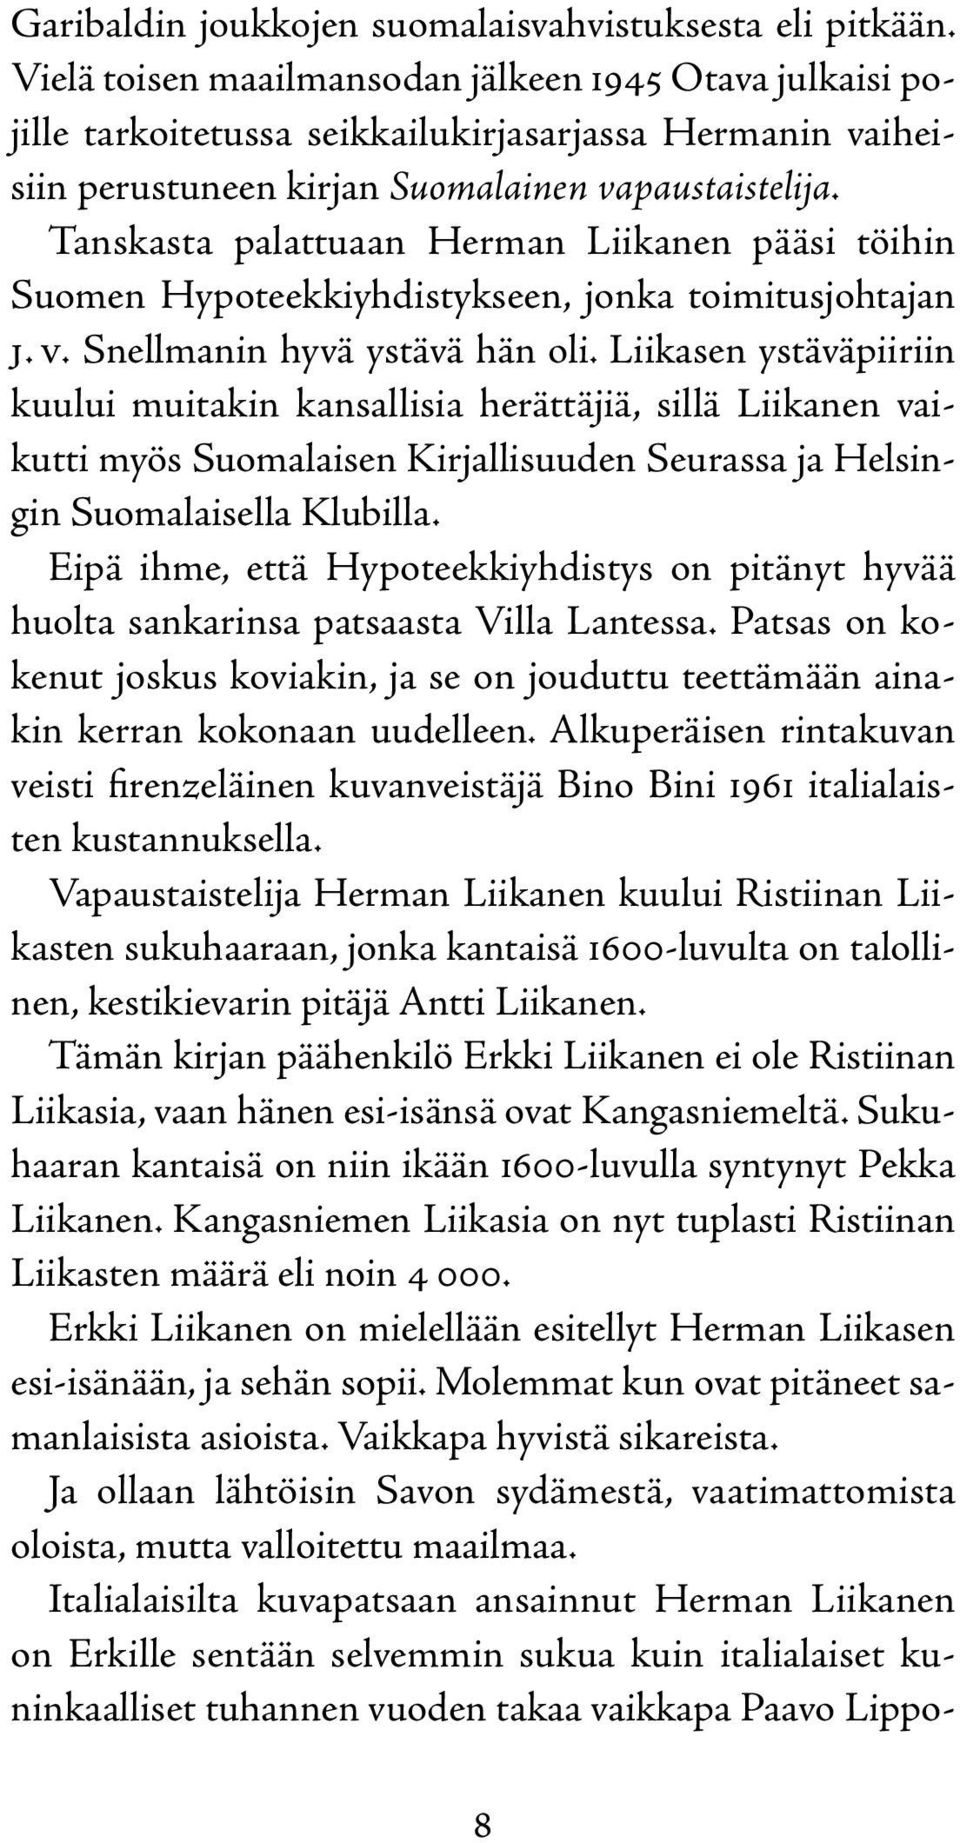 Tanskasta palattuaan Herman Liikanen pääsi töihin Suomen Hypoteekkiyhdistykseen, jonka toimitusjohtajan J. V. Snellmanin hyvä ystävä hän oli.